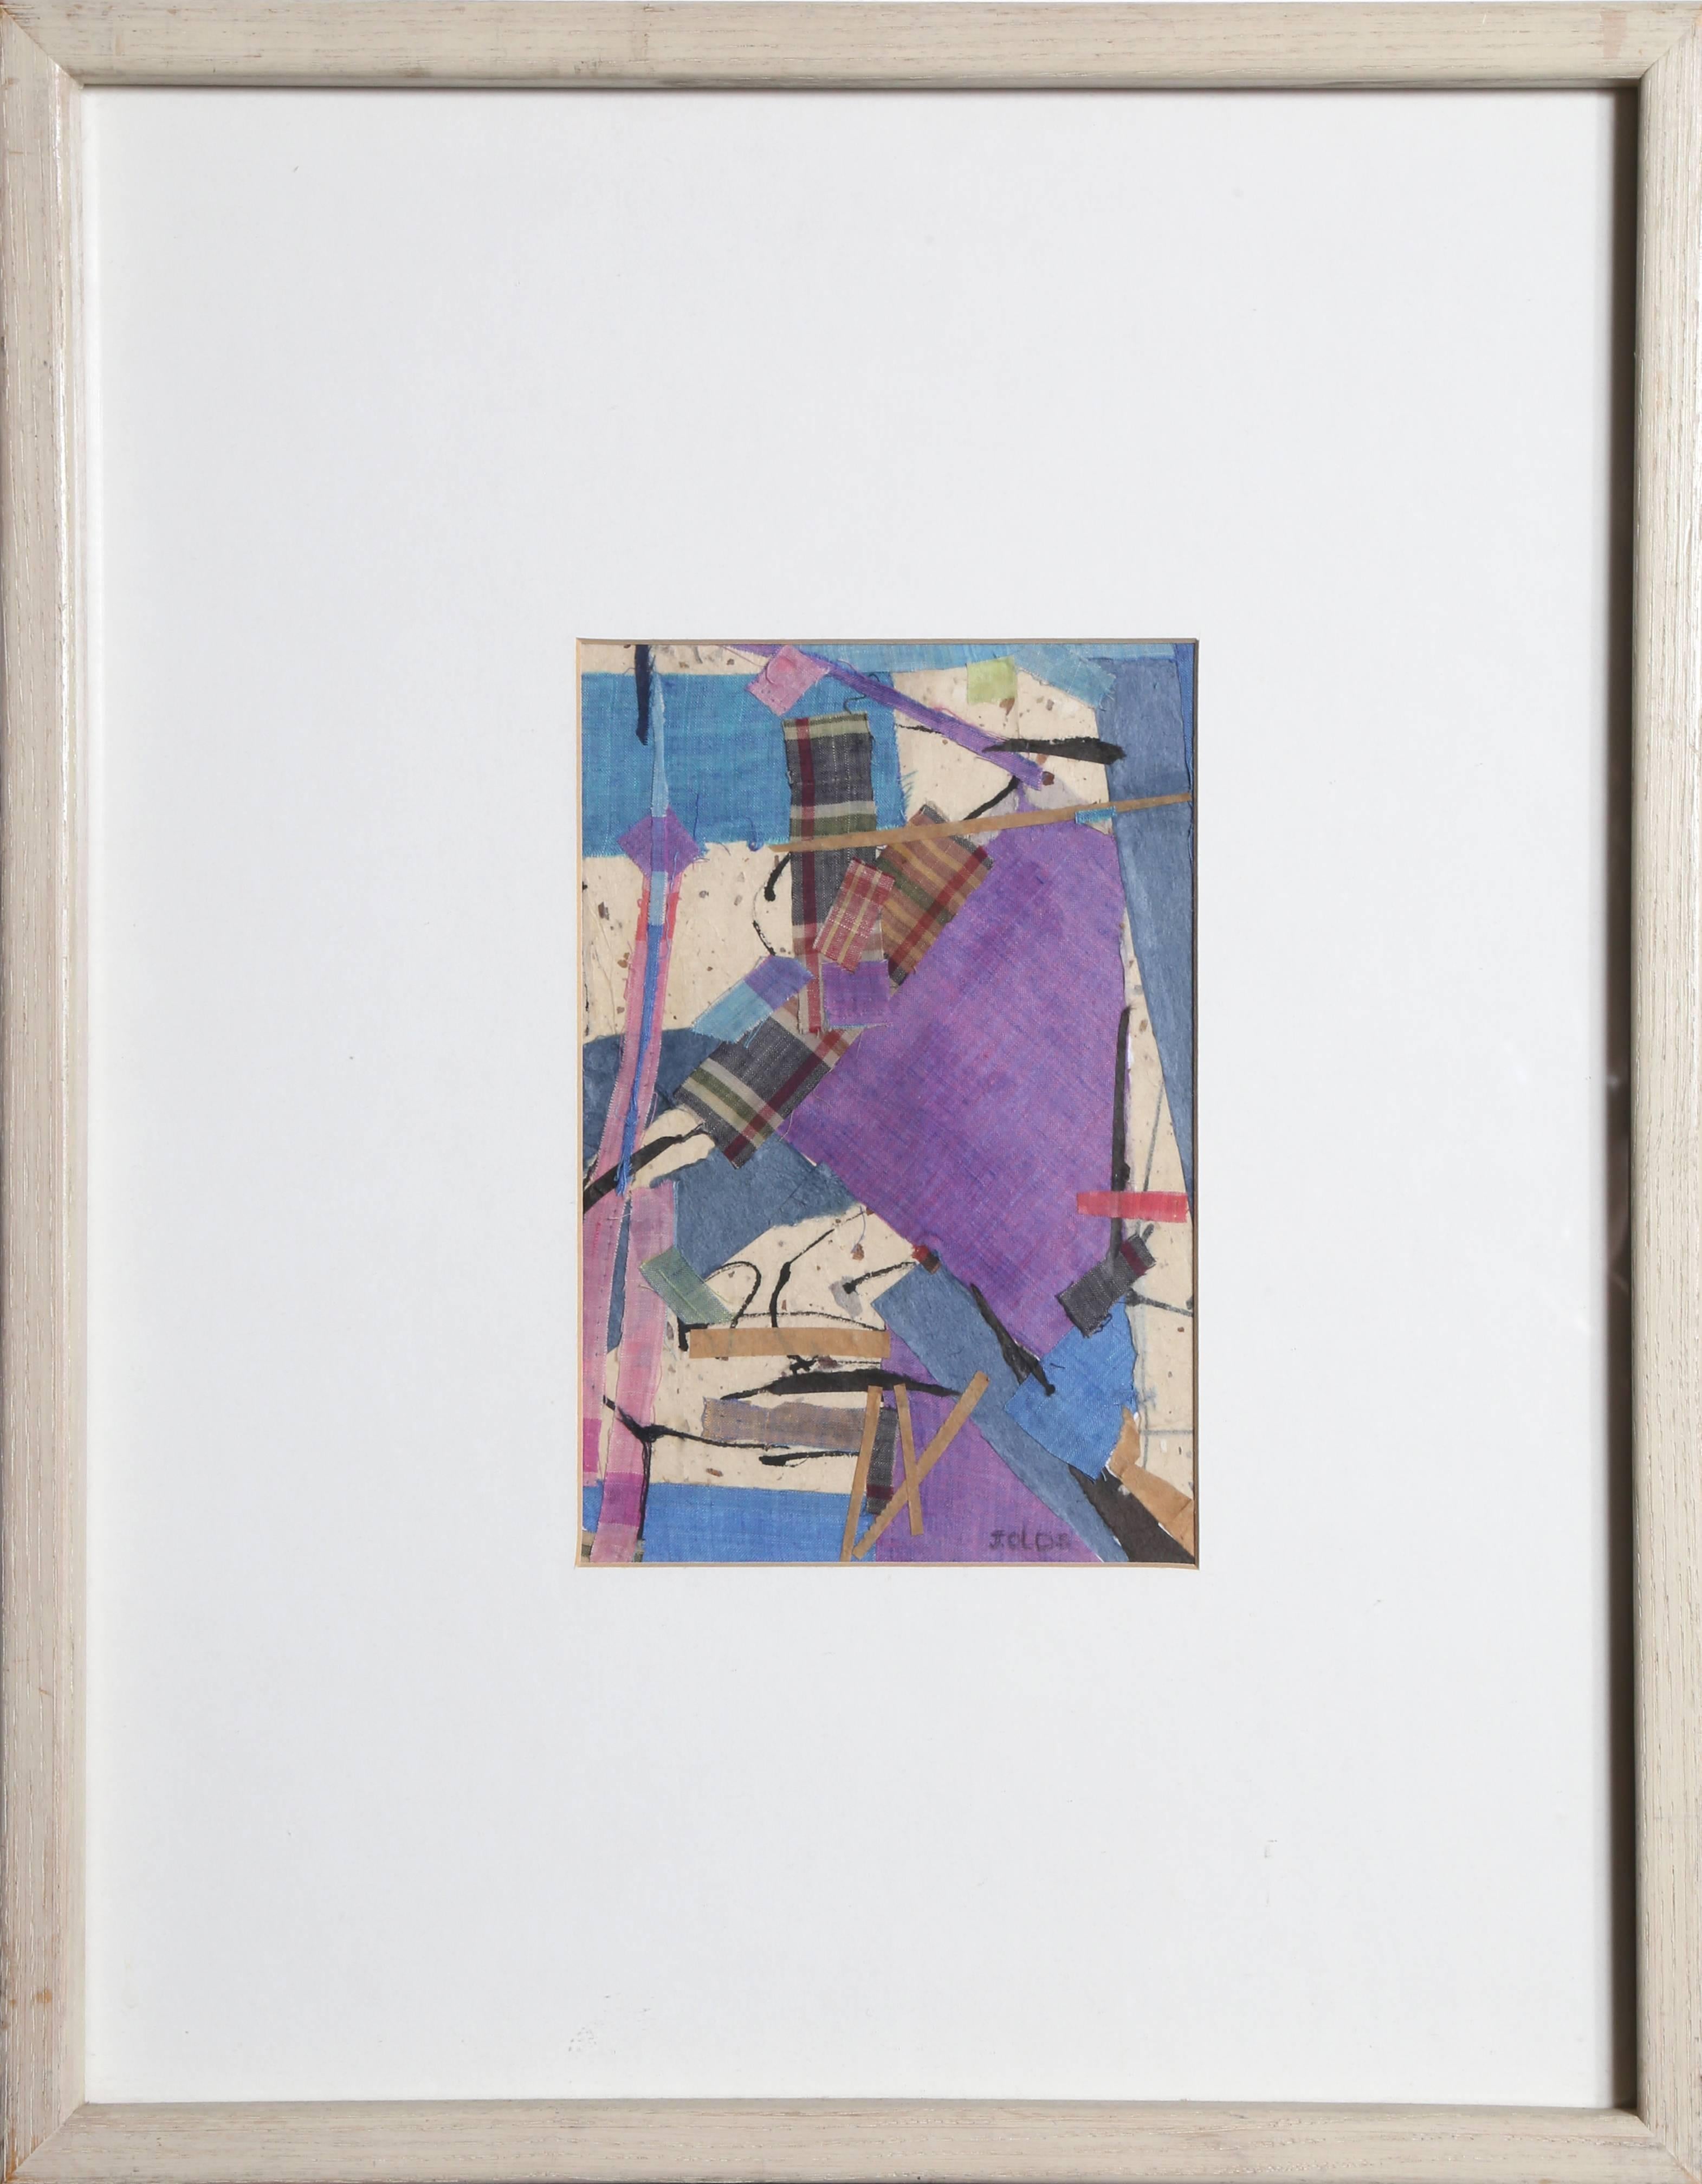 « Lavender, bleu et carreaux », collage technique mixte avec tissu, vers 1983